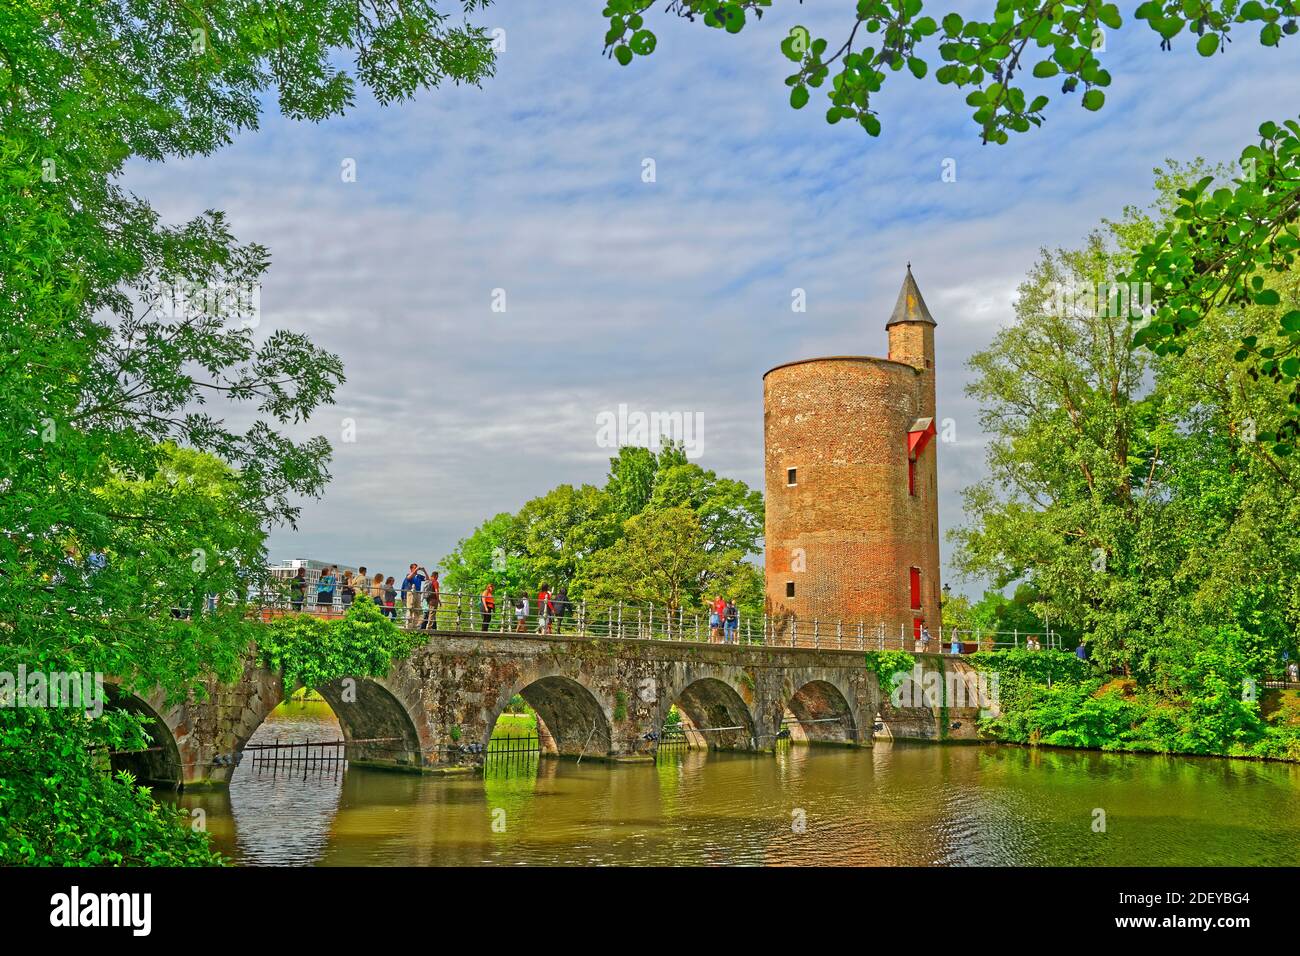 Viaducto sobre el Minnewater y la Torre de la Pólvora, Brujas antigua ciudad de Flandes, Bélgica. Foto de stock